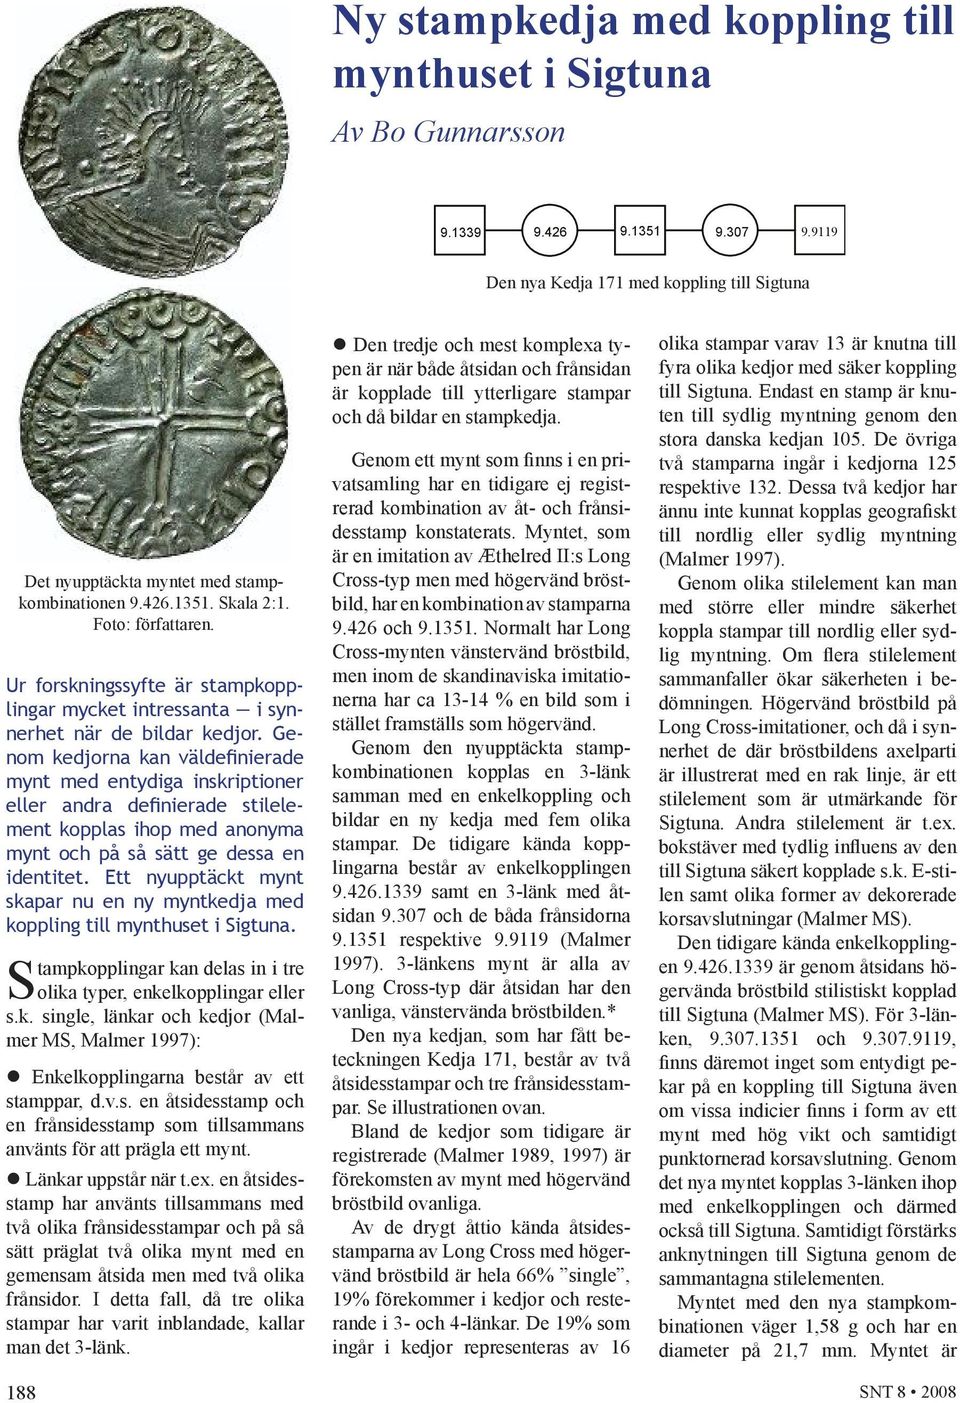 Genom kedjorna kan väldefinierade mynt med entydiga inskriptioner eller andra definierade stilelement kopplas ihop med anonyma mynt och på så sätt ge dessa en identitet.